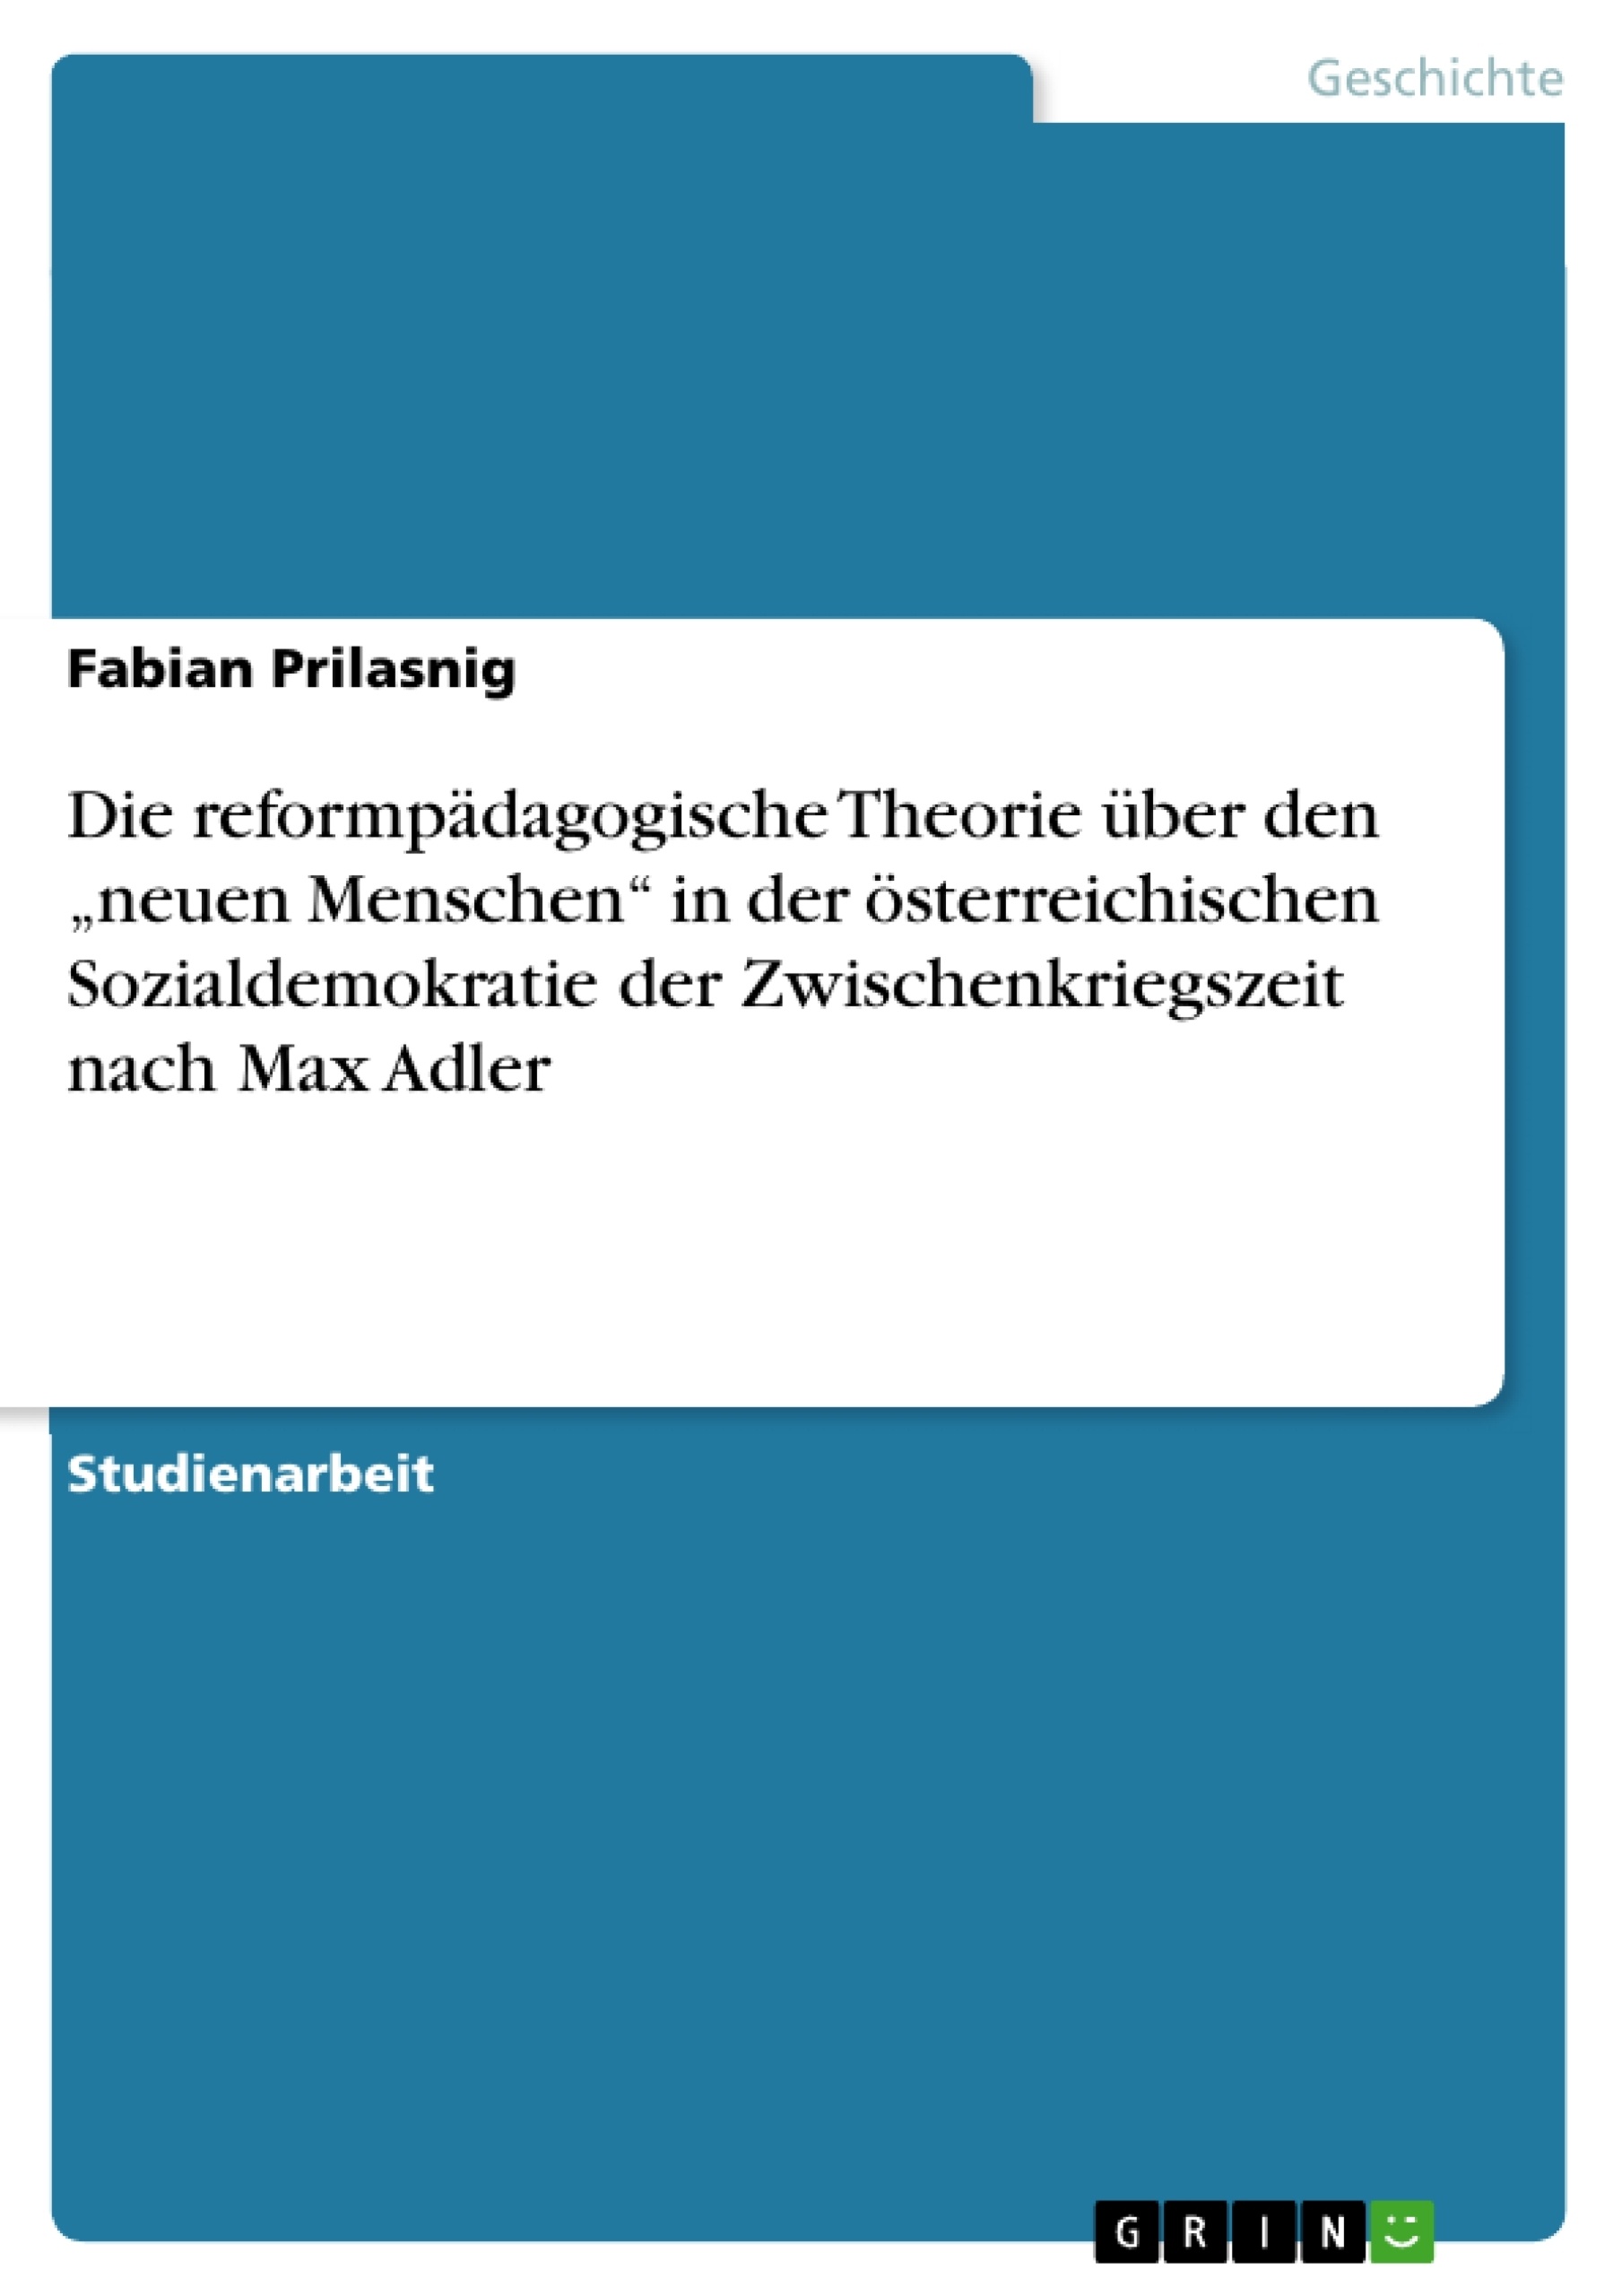 Título: Die reformpädagogische Theorie über den „neuen Menschen“ in der österreichischen Sozialdemokratie der Zwischenkriegszeit nach Max Adler